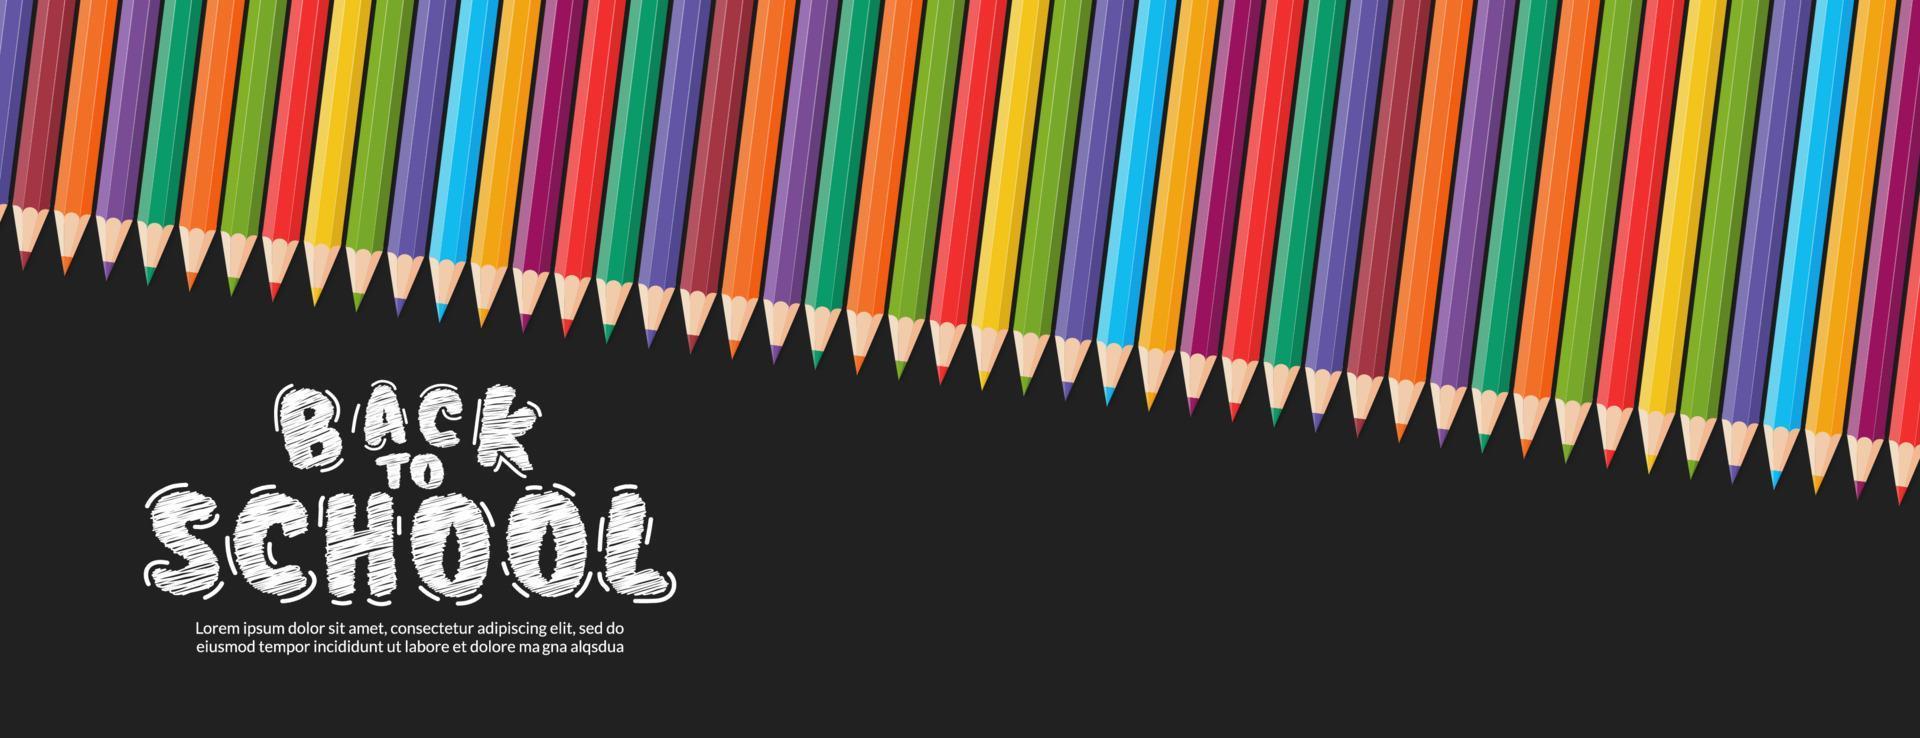 kleur potloden vector ontwerp achtergrond, terug naar school concept met kleurrijke kleurpotloden banner